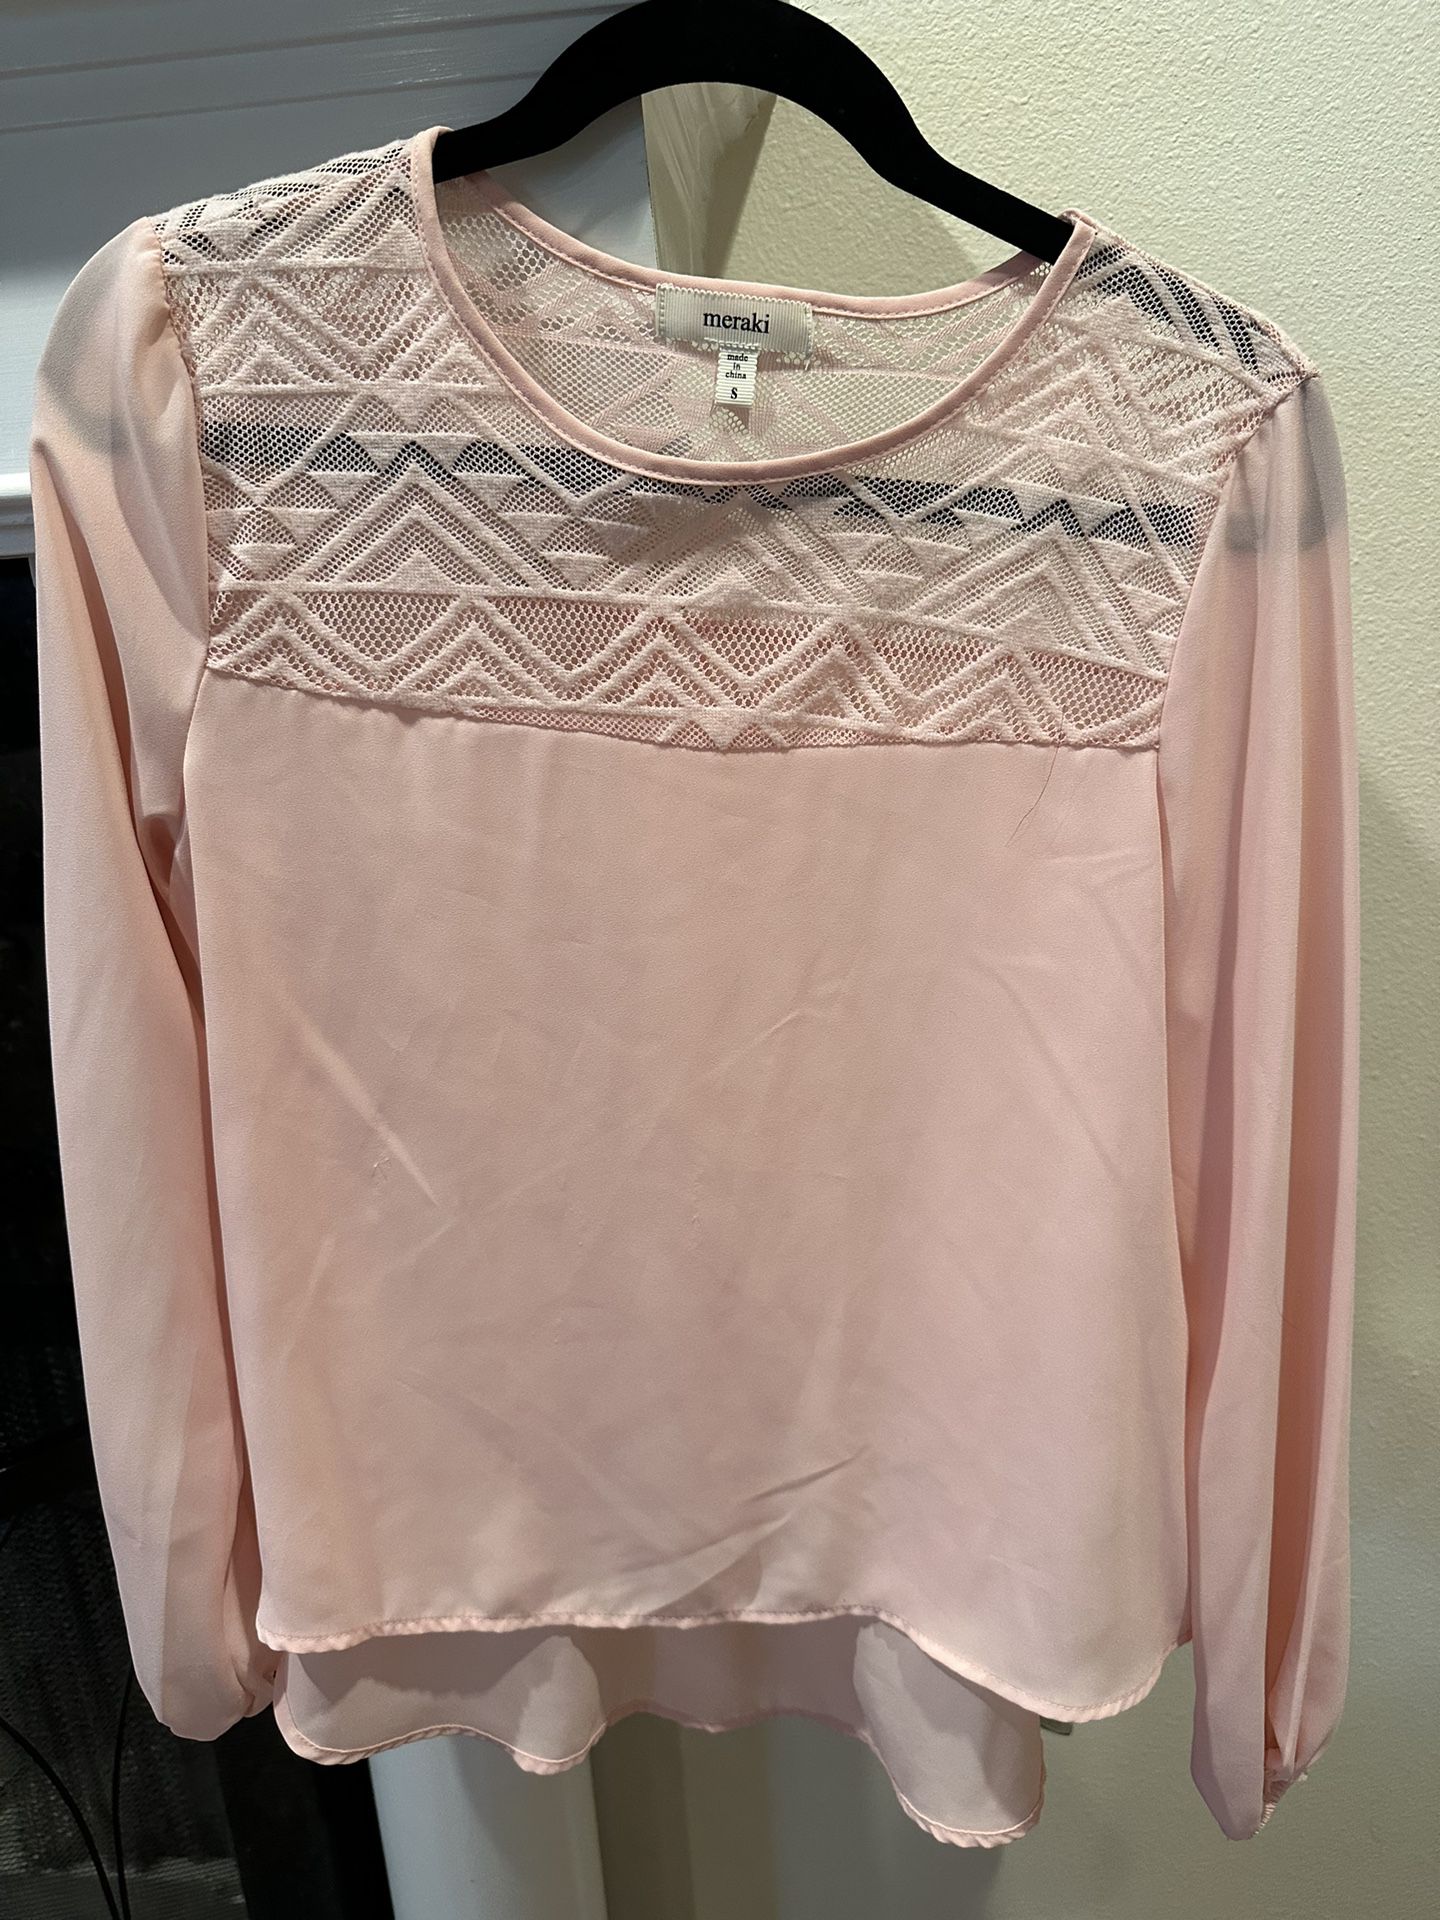 Meraki Women’s Long Sleeve Shirt With Lace